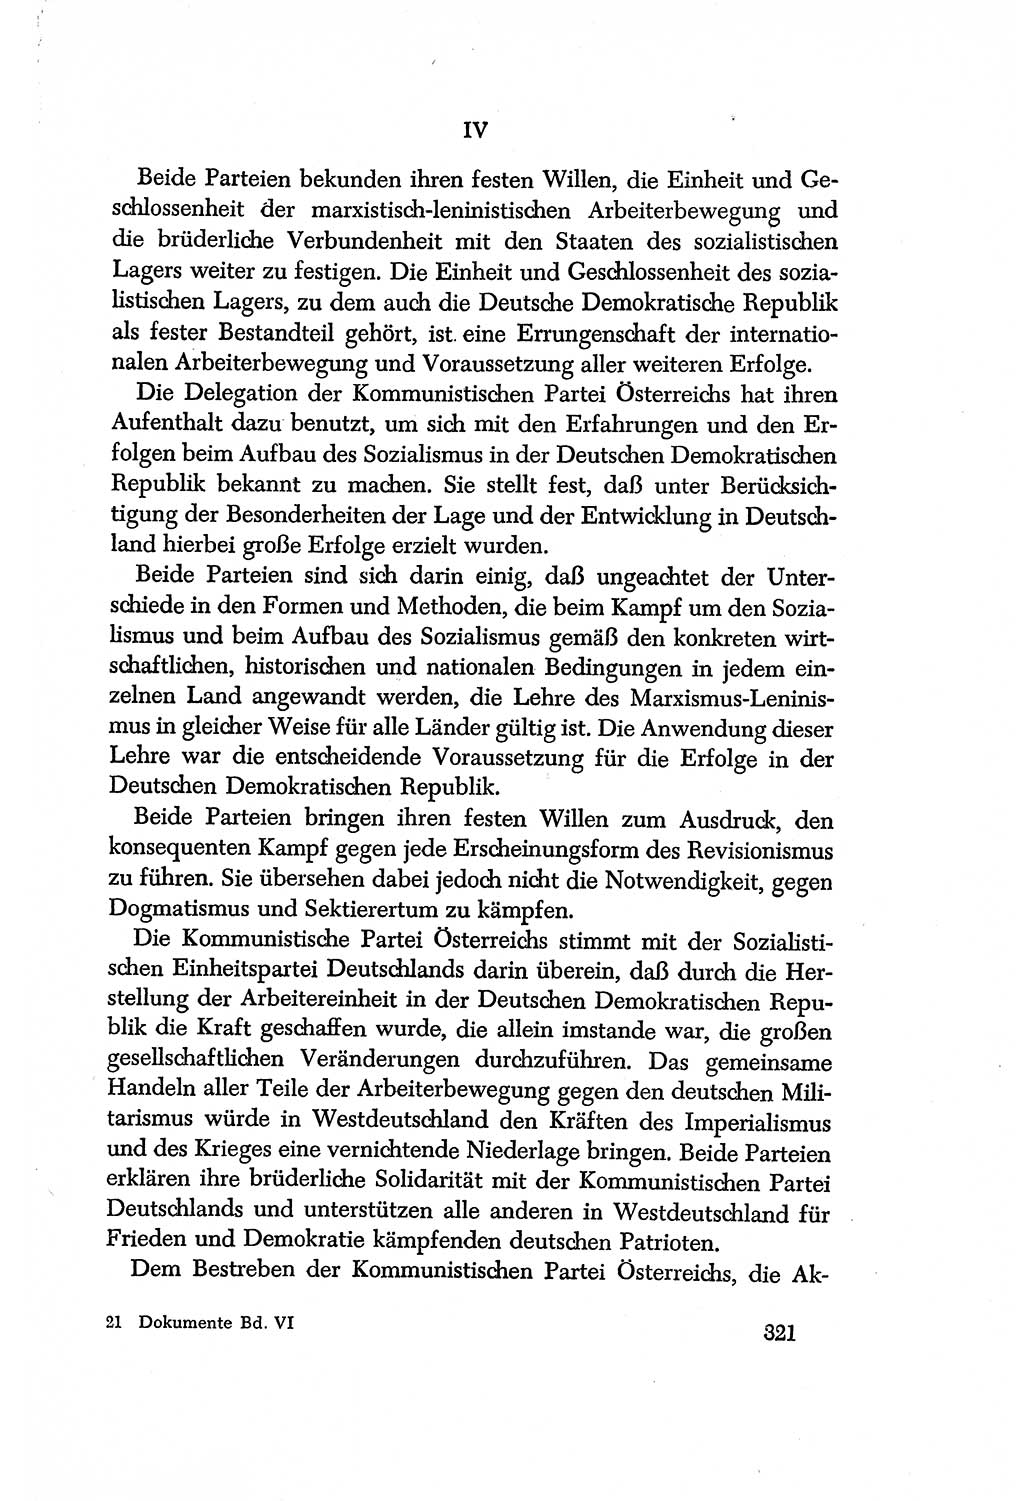 Dokumente der Sozialistischen Einheitspartei Deutschlands (SED) [Deutsche Demokratische Republik (DDR)] 1956-1957, Seite 321 (Dok. SED DDR 1956-1957, S. 321)